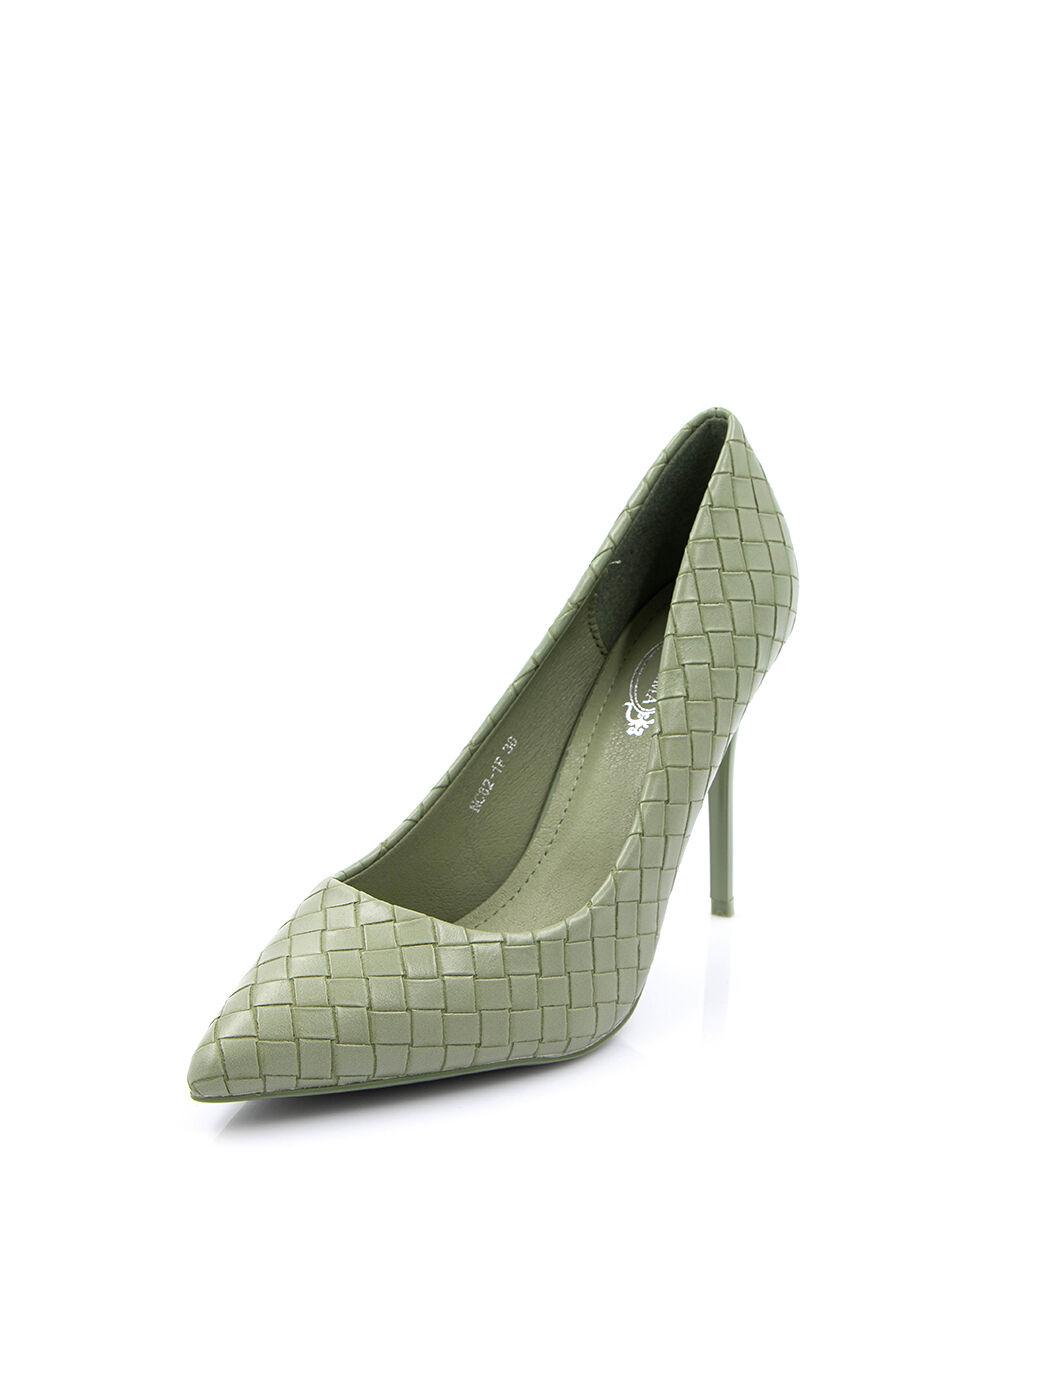 Туфли женские зеленые экокожа каблук шпилька демисезон от производителя FM вид 0